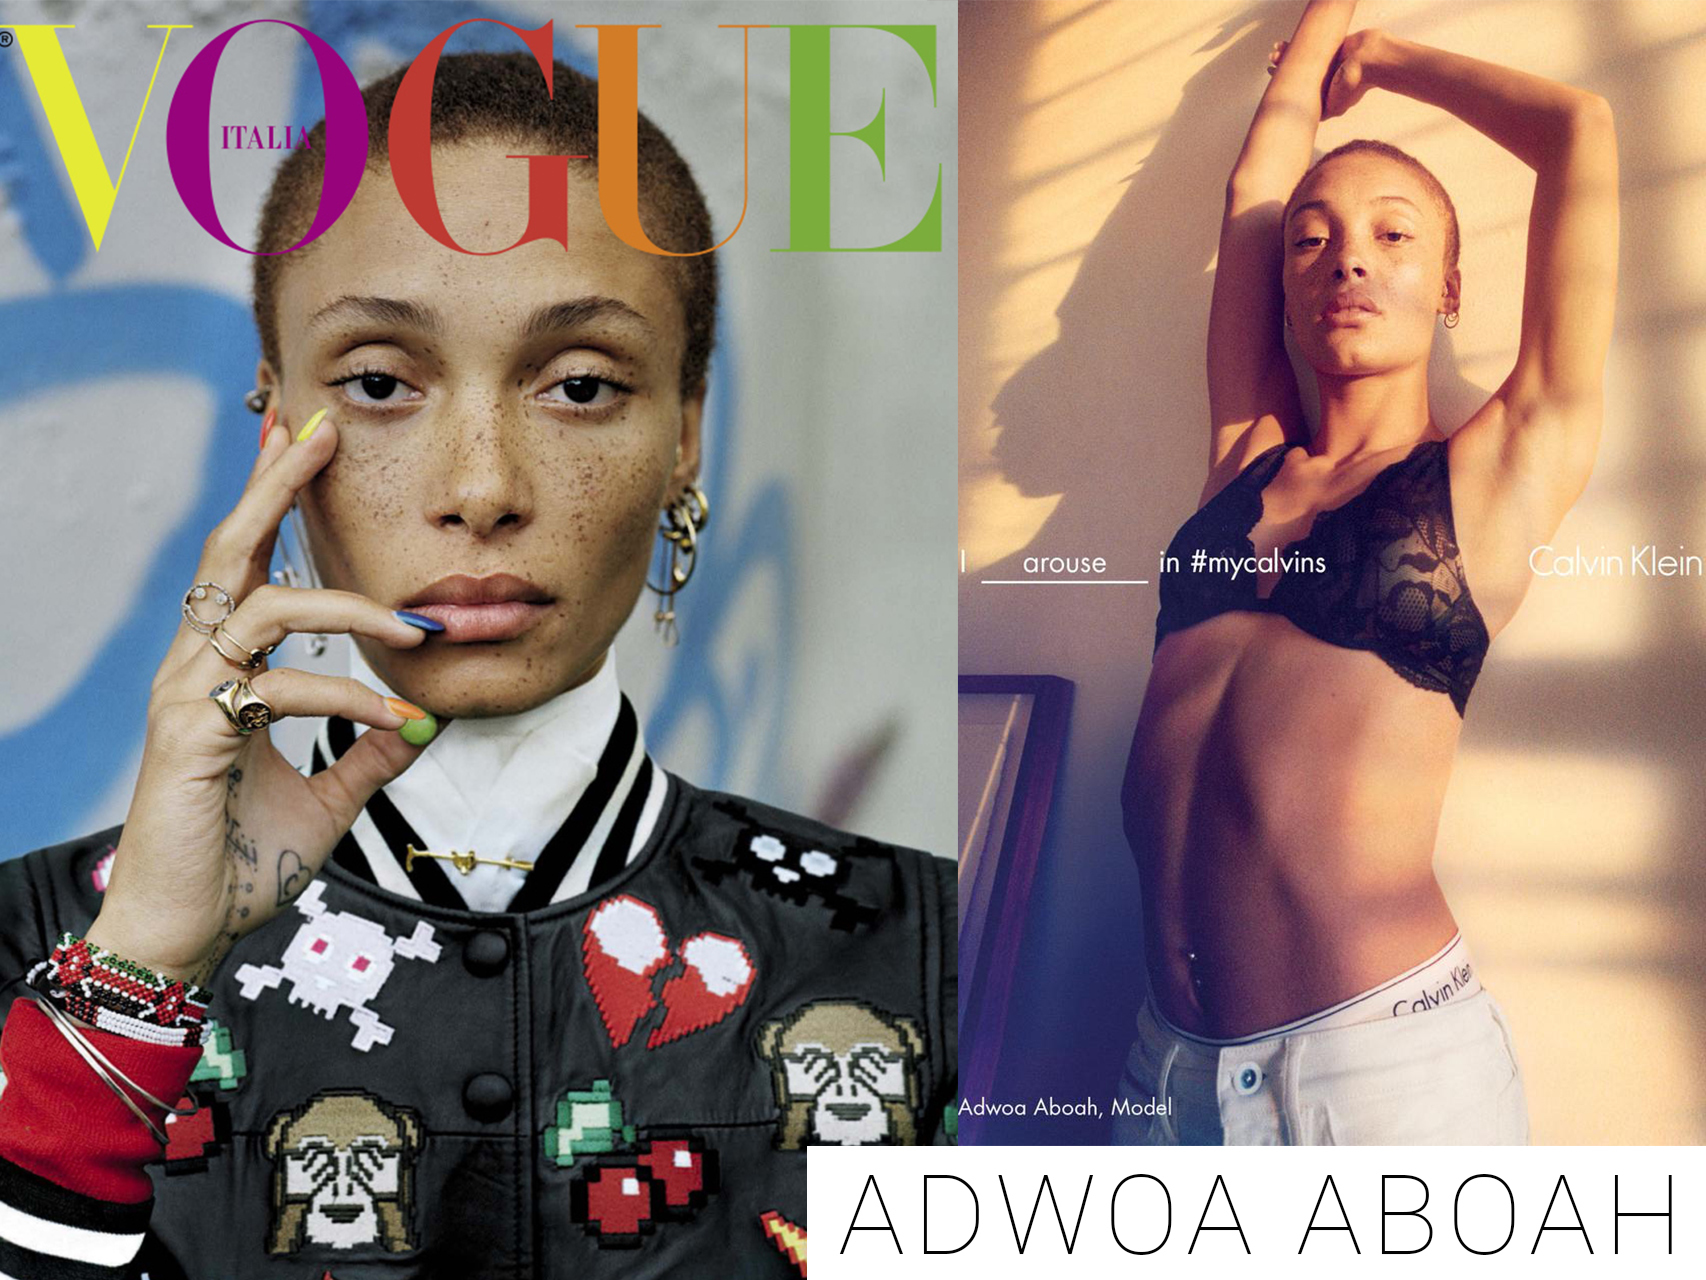 Adwoa Aboah en la portada de Vogue Italia y En la campaña de Calvin Klein